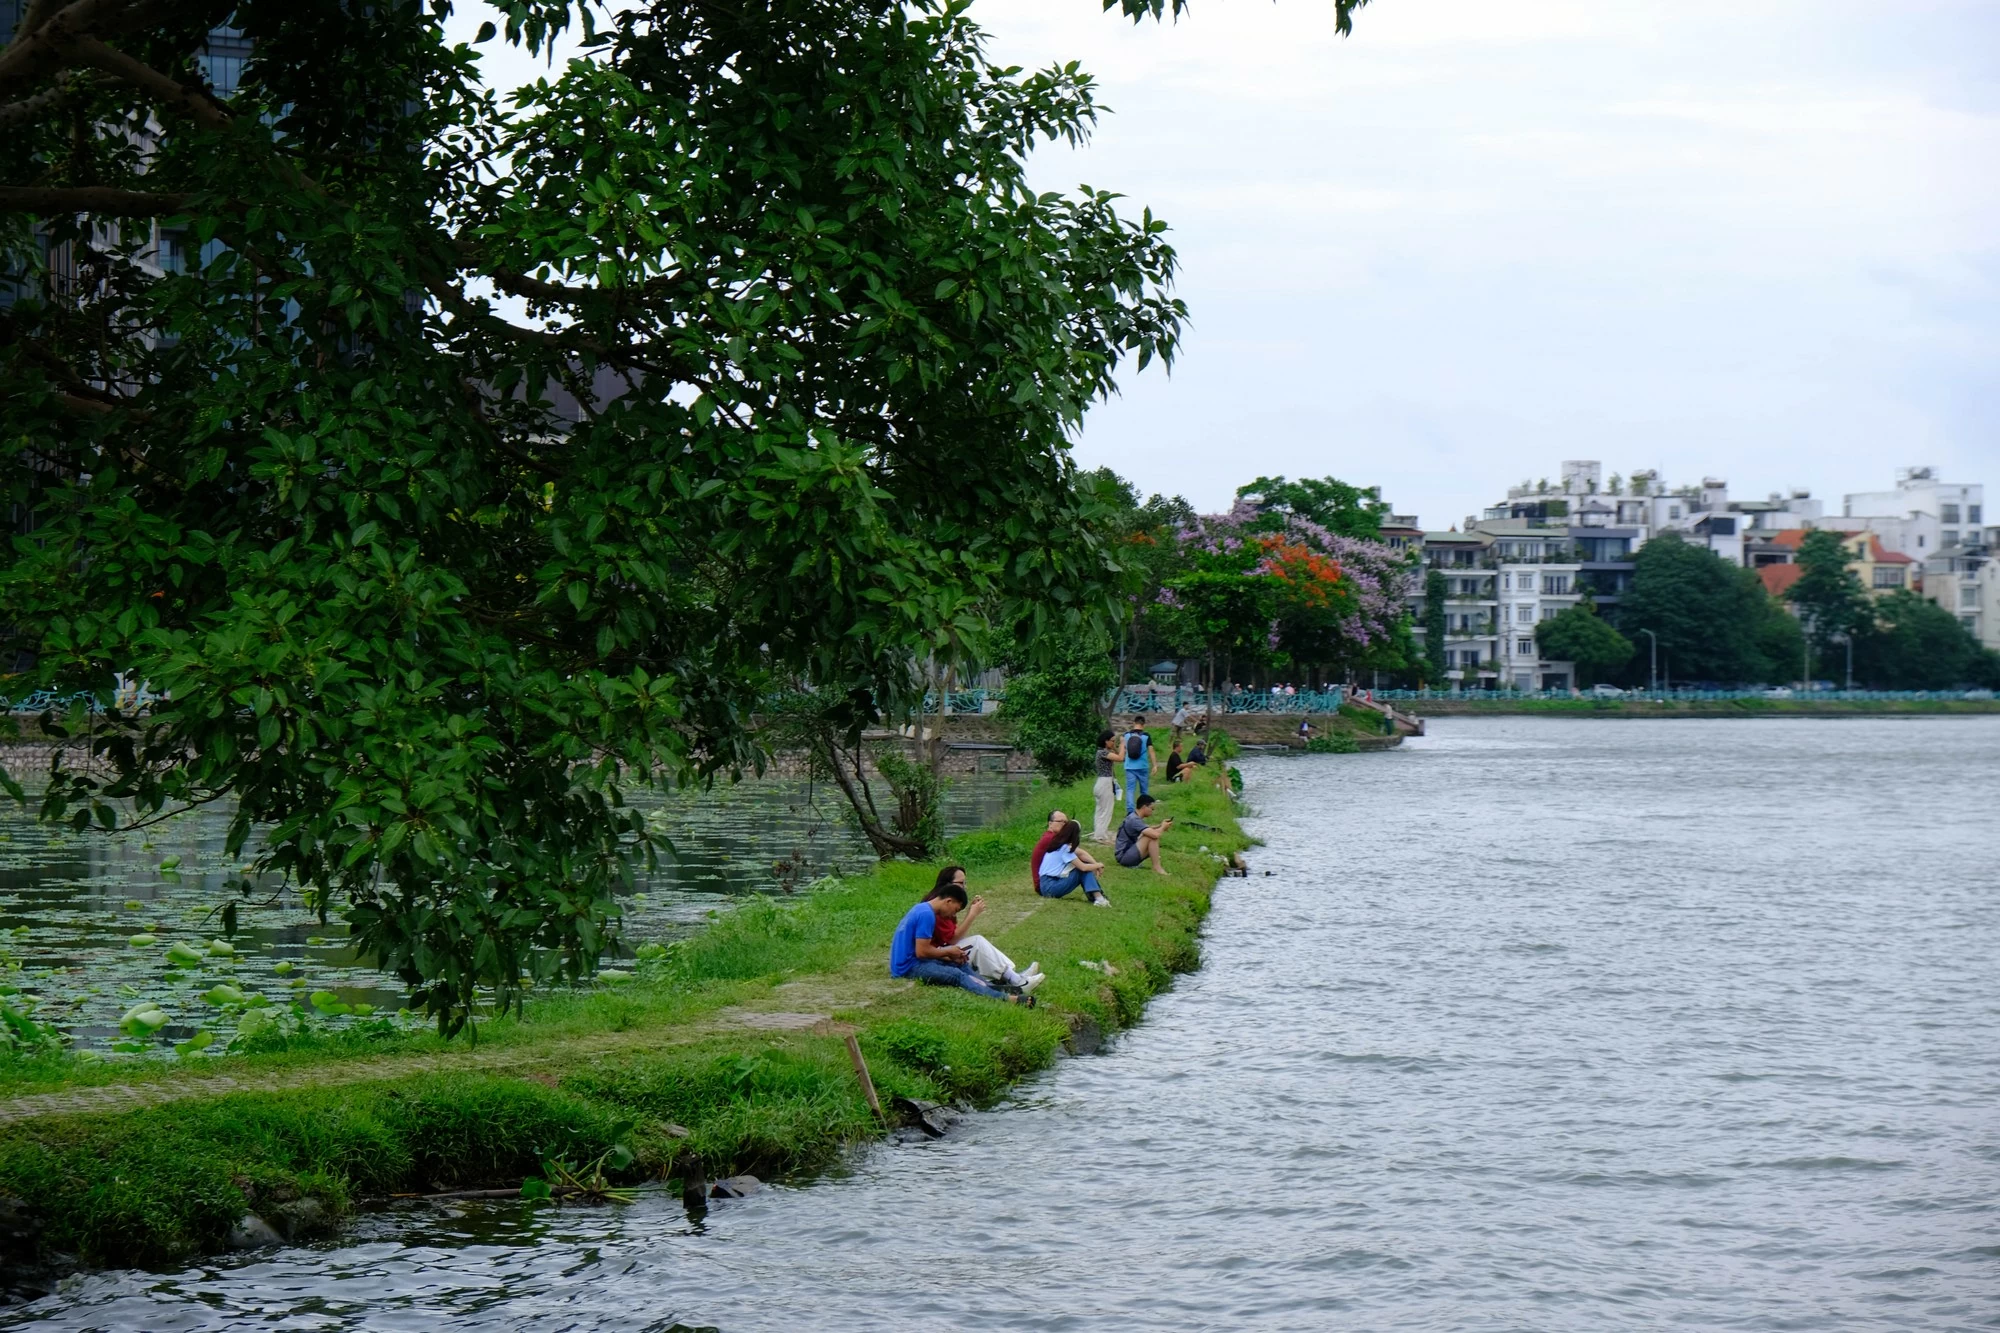 Tr&ecirc;n bờ hồ, c&aacute;c bạn trẻ tập trung ở đoạn bờ k&egrave; ngăn nước v&agrave;o hồ trồng hoa sen để h&oacute;ng m&aacute;t, ngắm cảnh. Ảnh: L&ecirc; An/Mekong ASEAN.